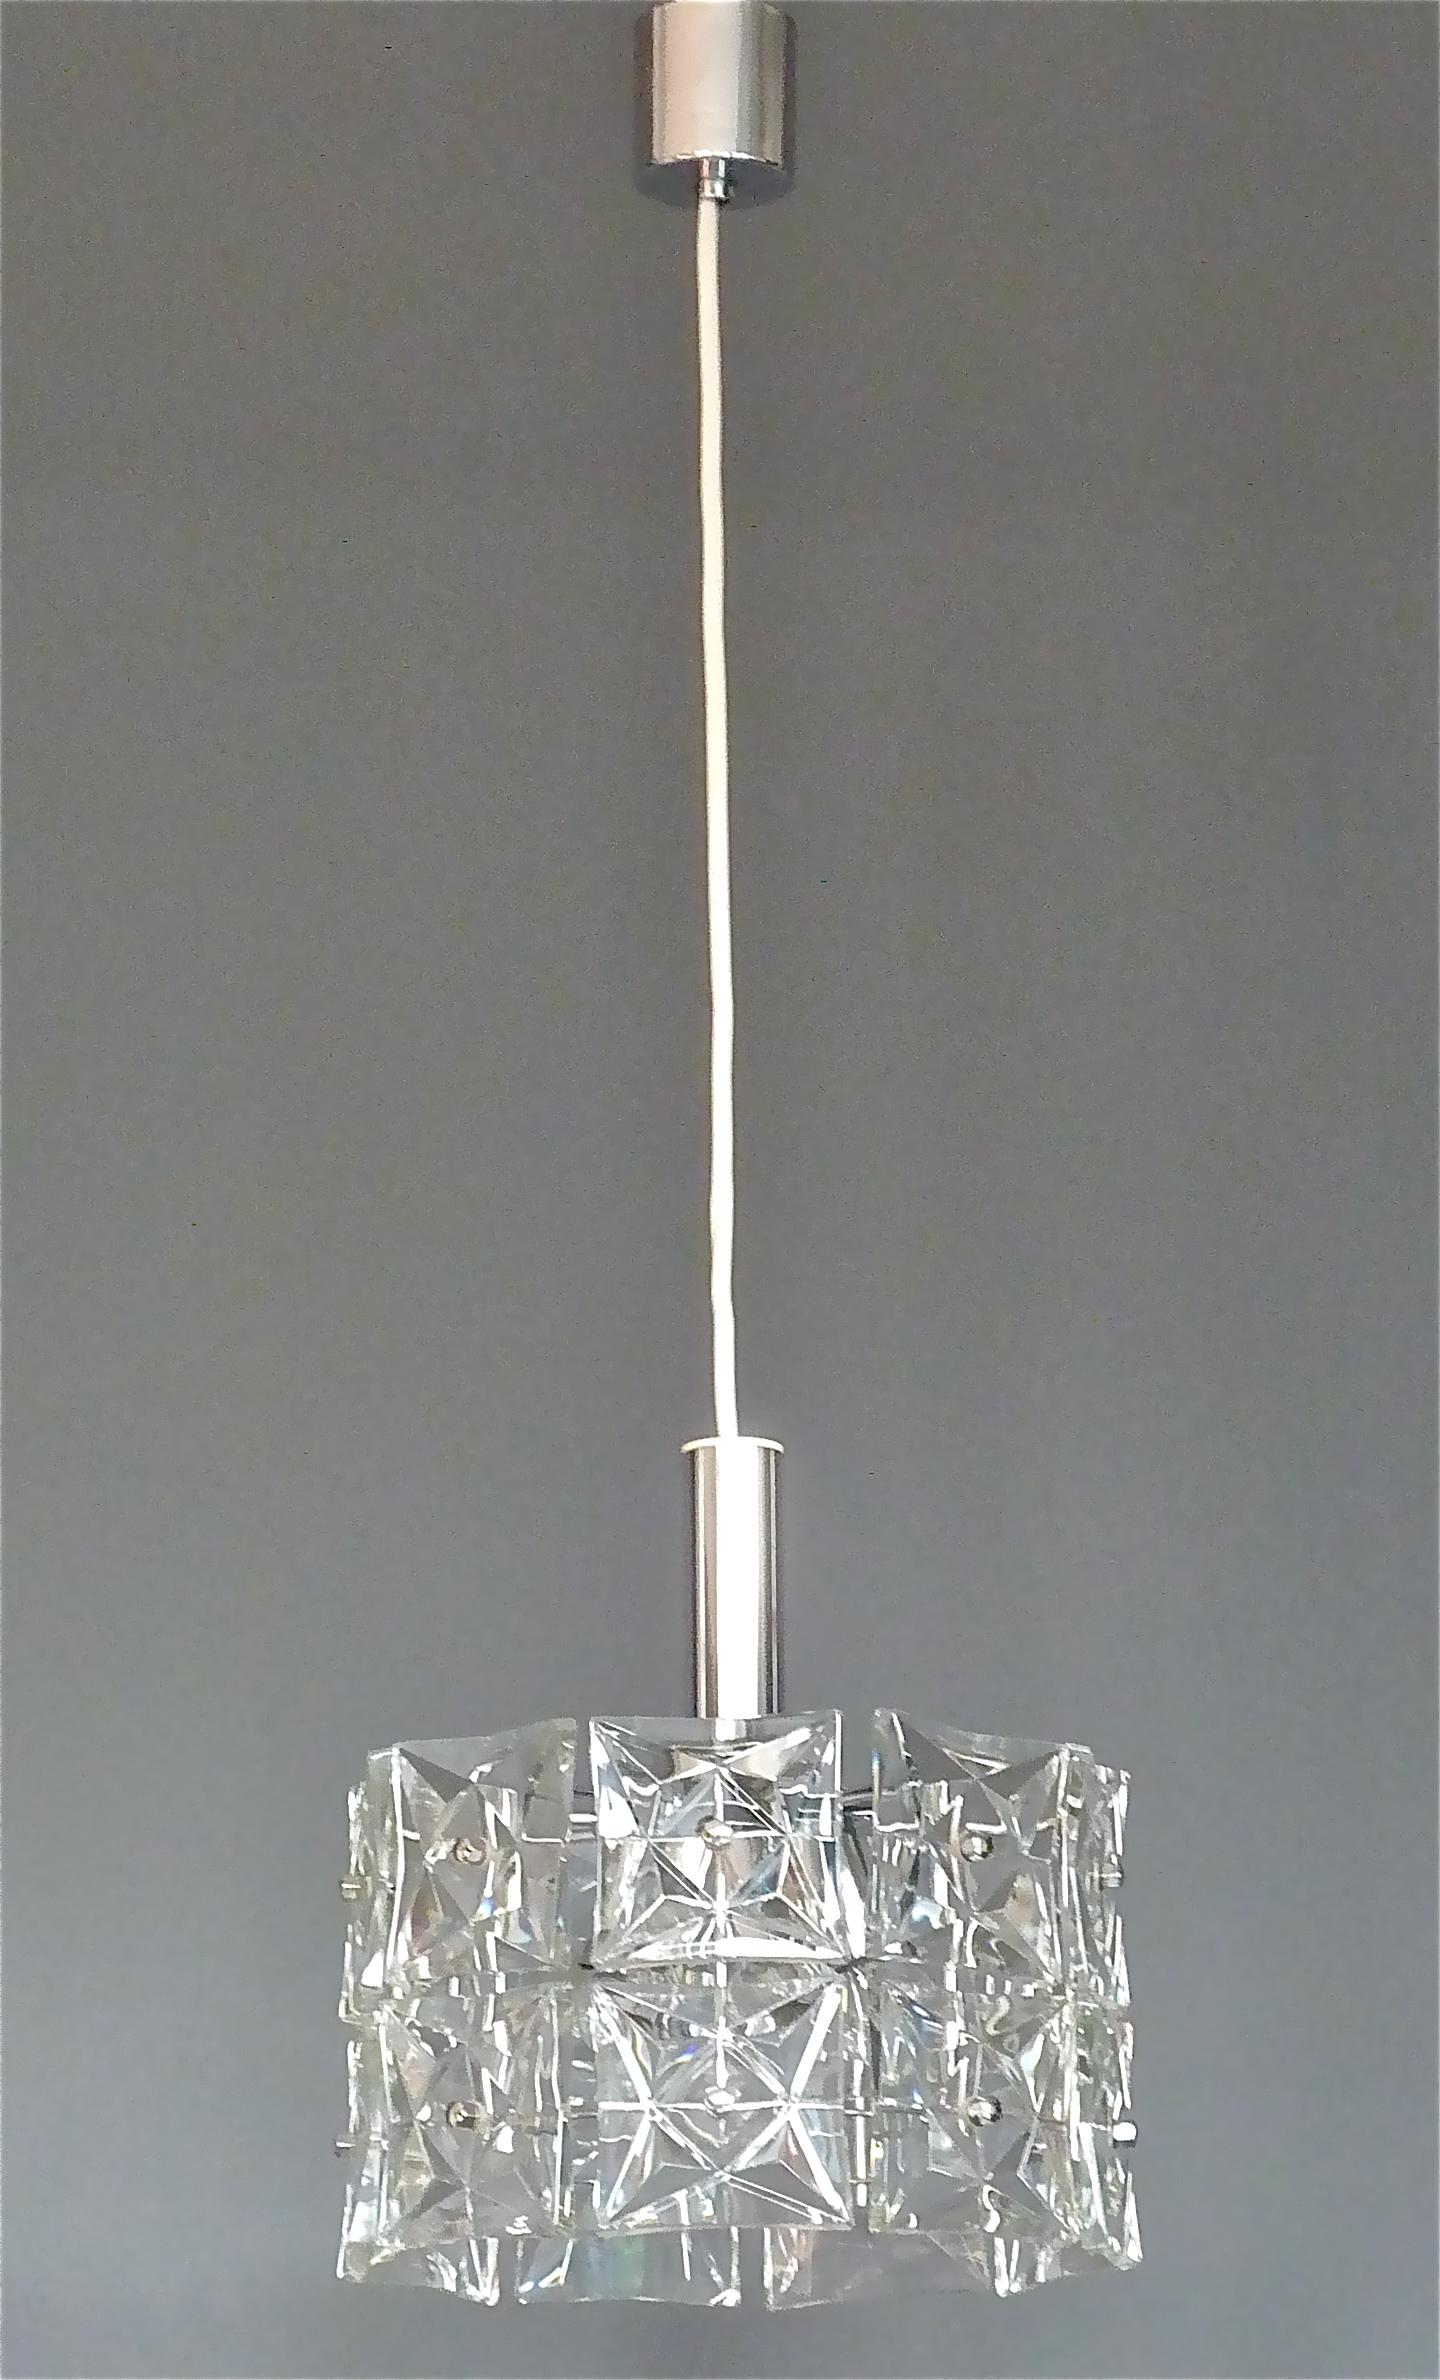 Zweistöckiger Space Age-Kronleuchter der Moderne von Kinkeldey, Deutschland, ca. 1960-1970. Sie besteht aus 18 funkelnden, quadratischen, facettierten Kristallgläsern, die jeweils 10 x 10 cm groß und breit sind und auf einer verchromten